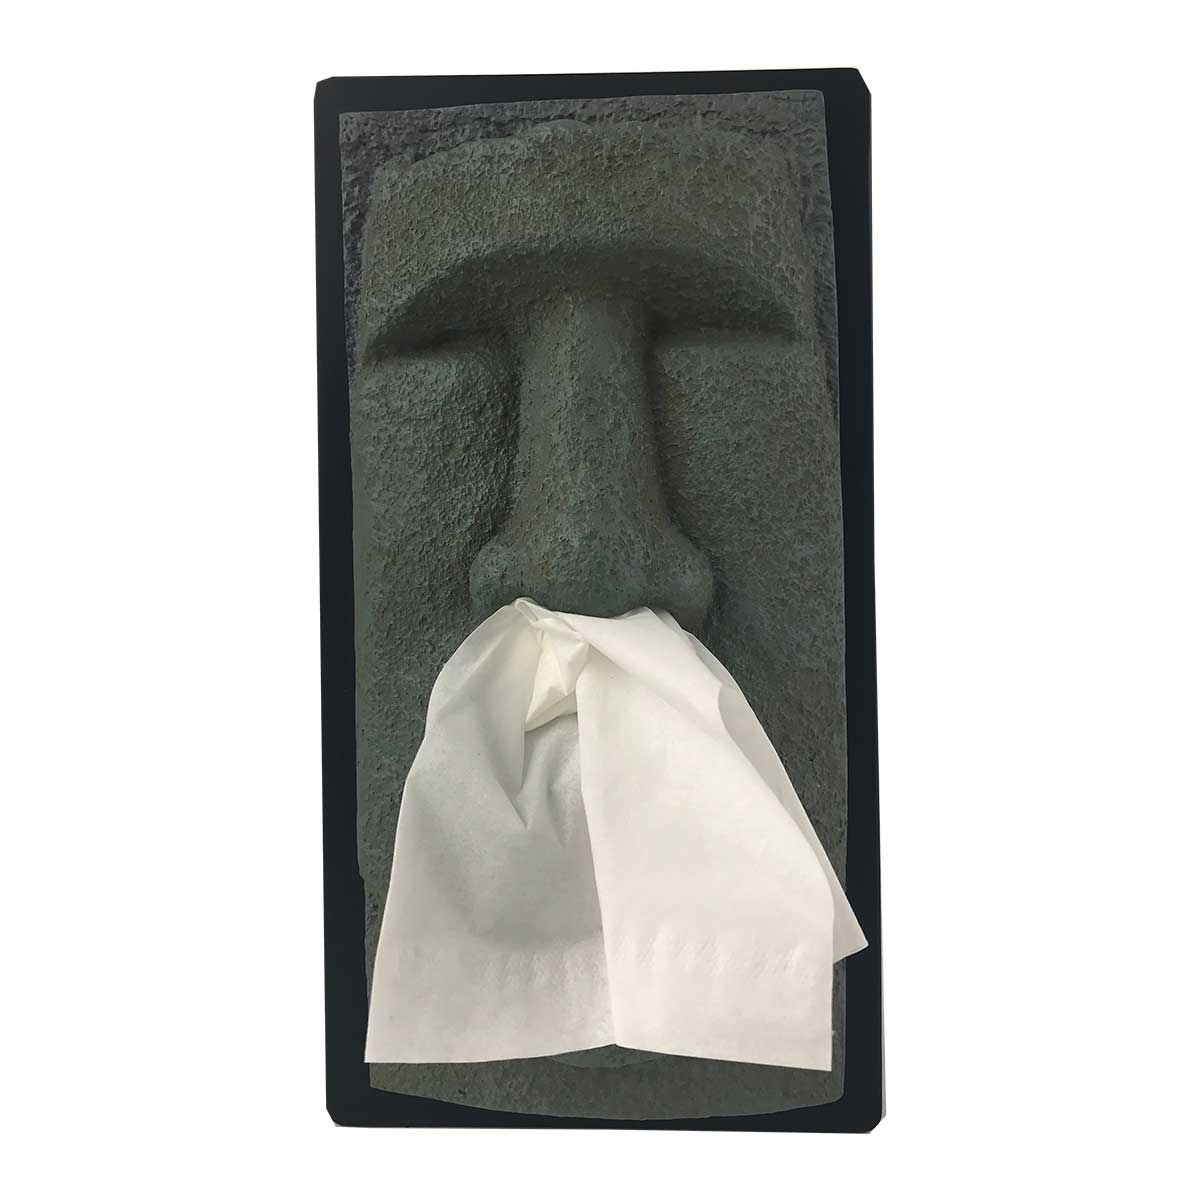 Novelty Tiki Head Face Tissue Box Cover